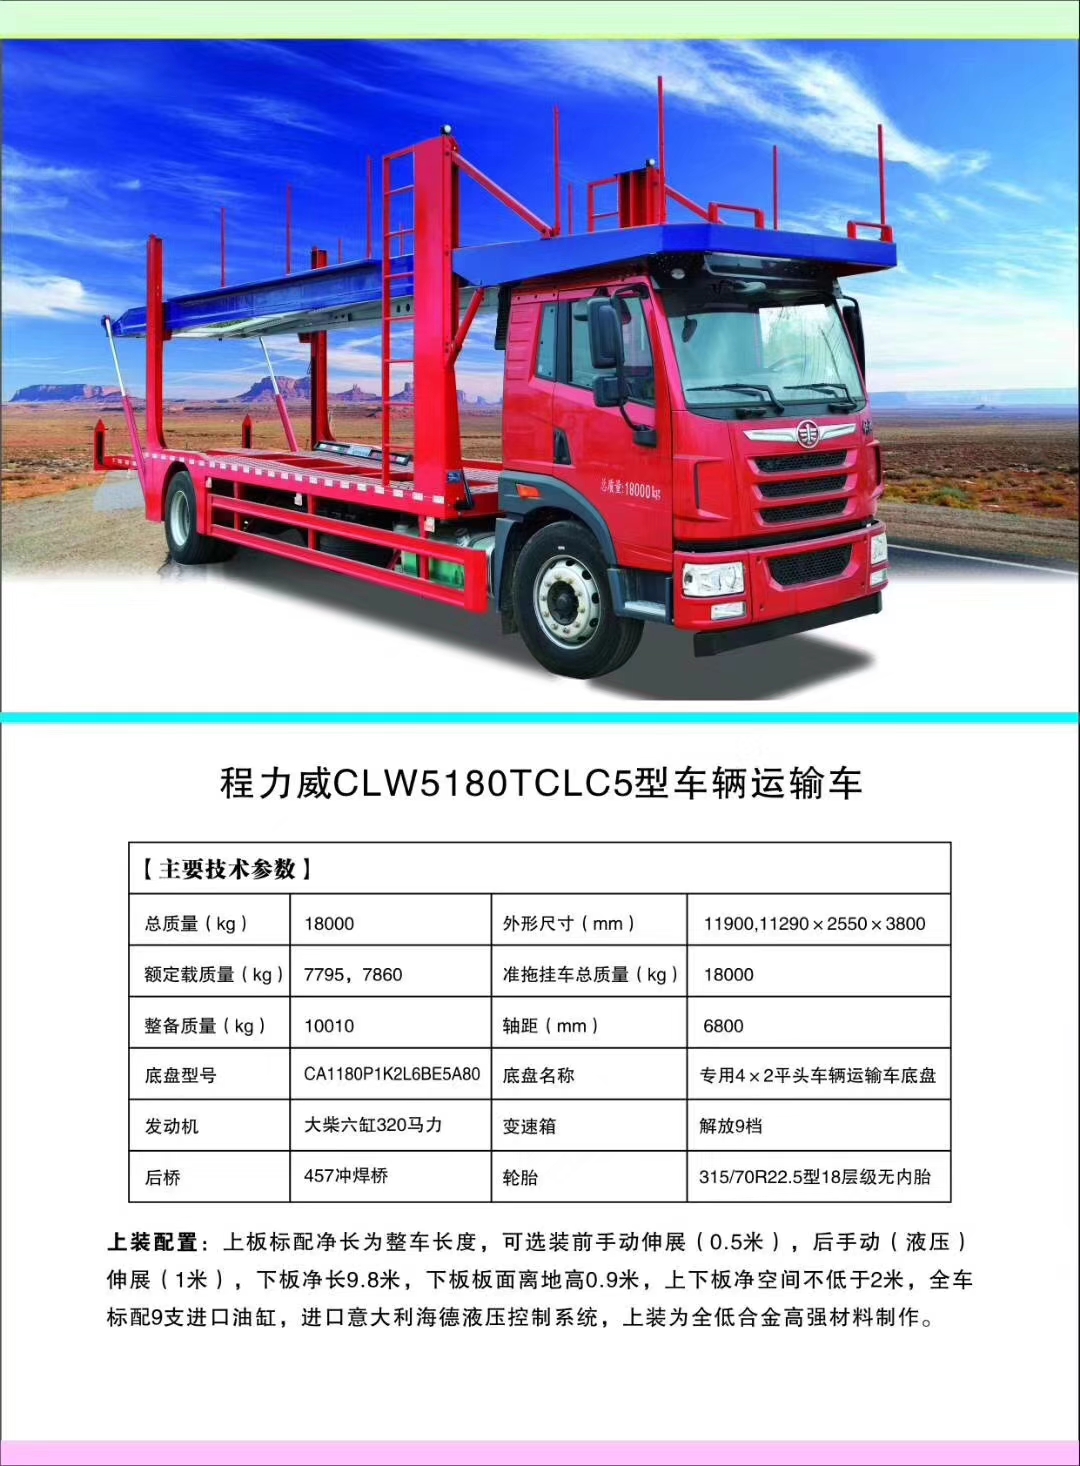 j9.com(中国区)官方网站汽车公司轿运车产品型号及配置